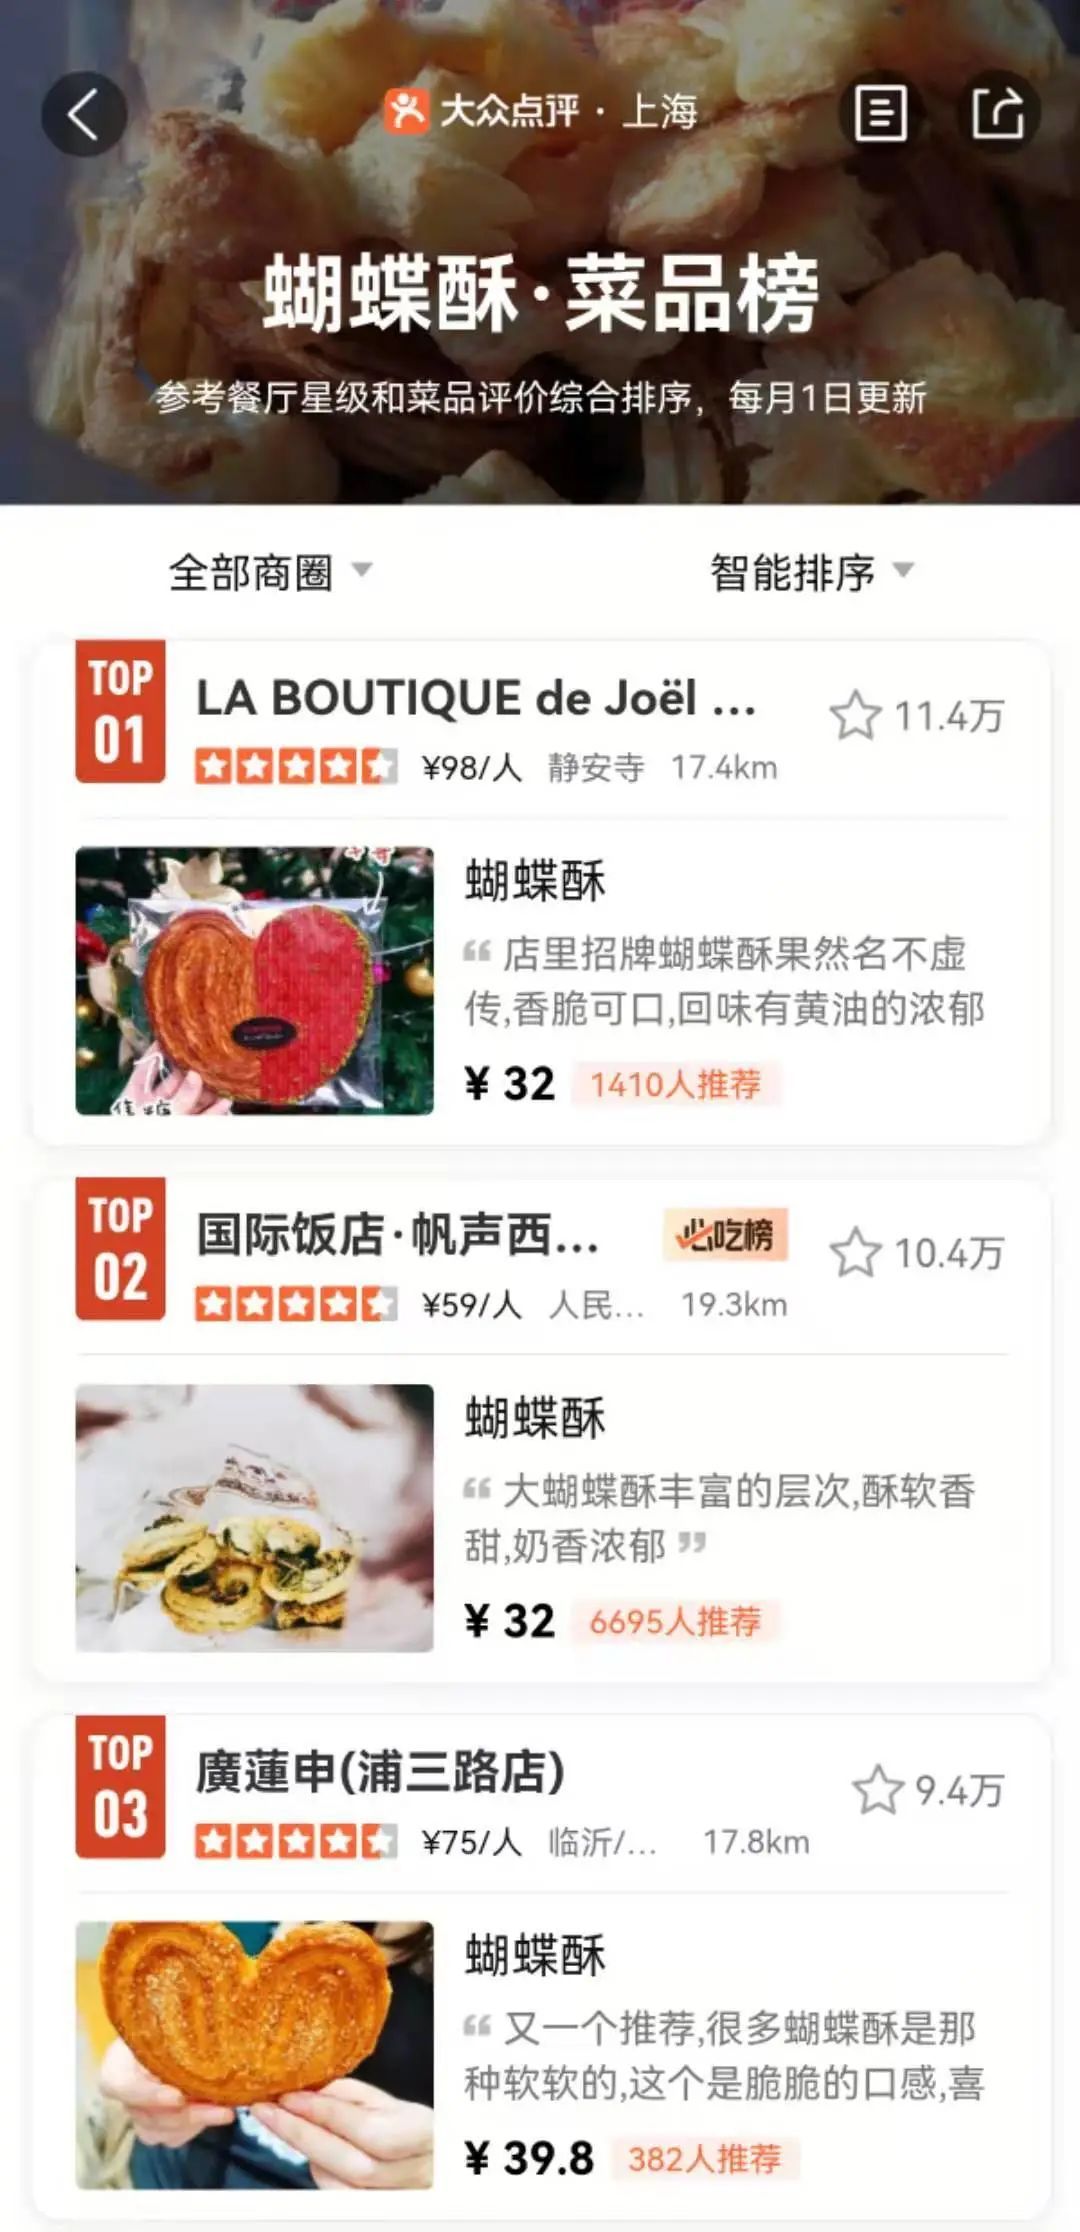 摘得全球32颗米其林星的世界名厨Joёl Robuchon在上海开的法餐厅，靠蝴蝶酥在魔都书写神话热榜排名第一